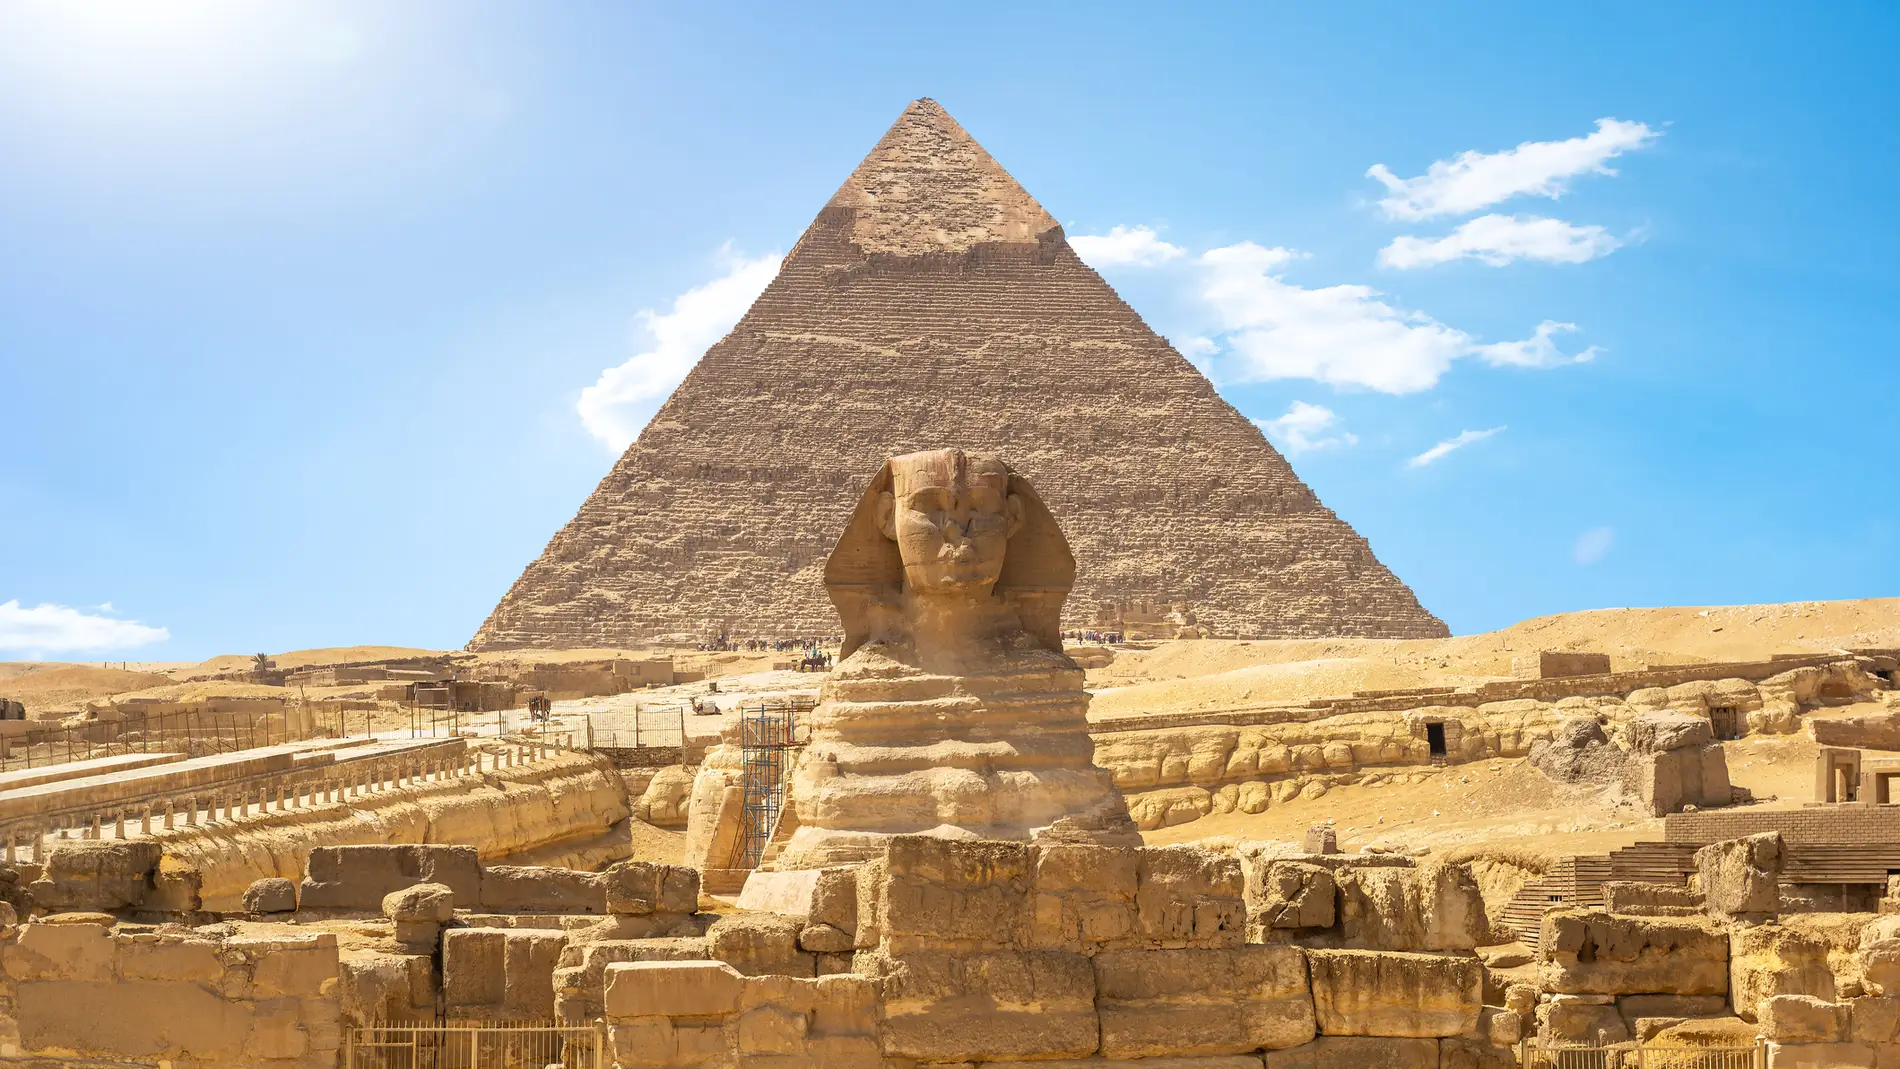 Pirámide de Giza en Egipto